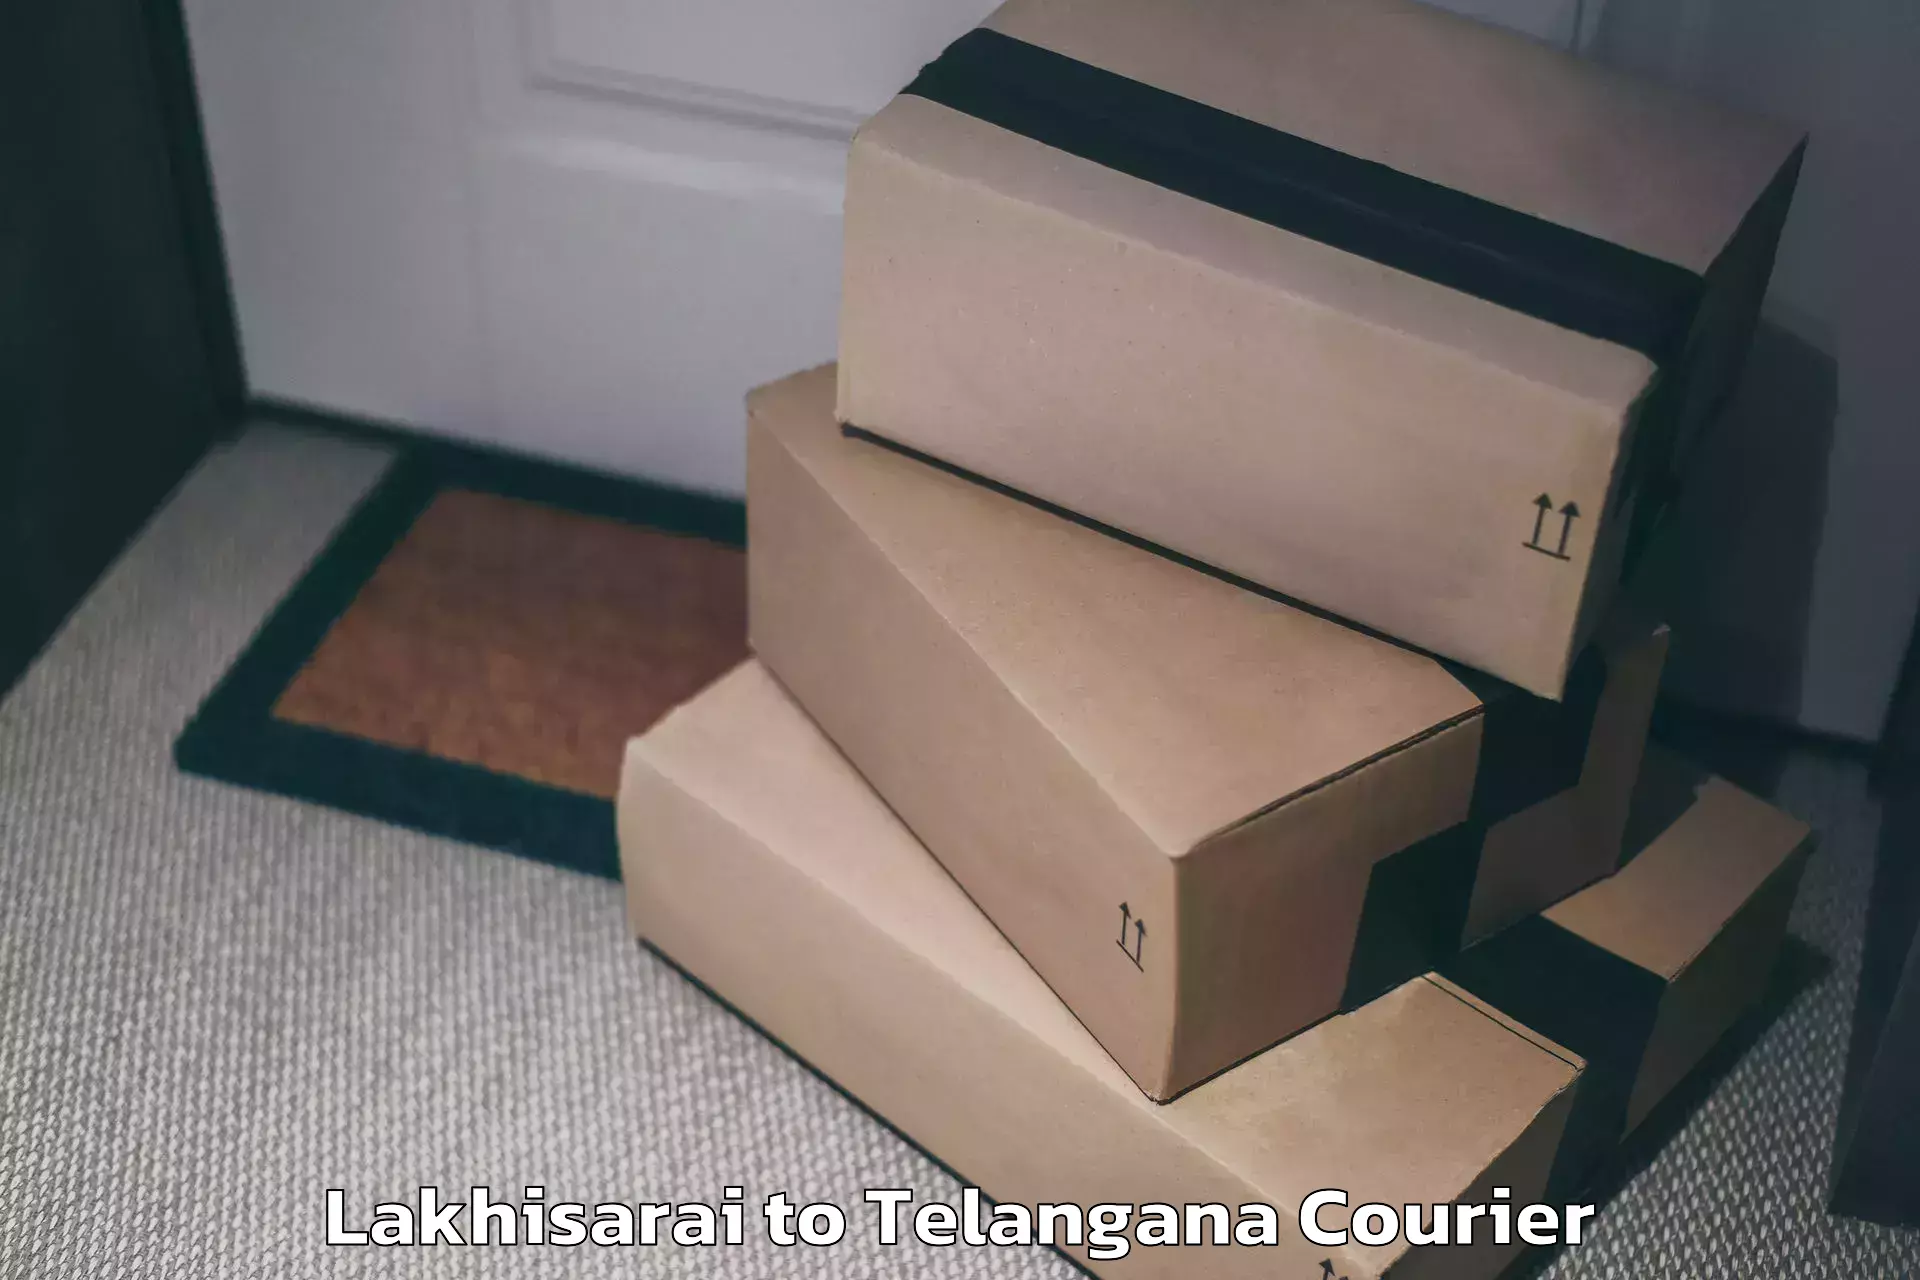 Luggage delivery app Lakhisarai to Vikarabad